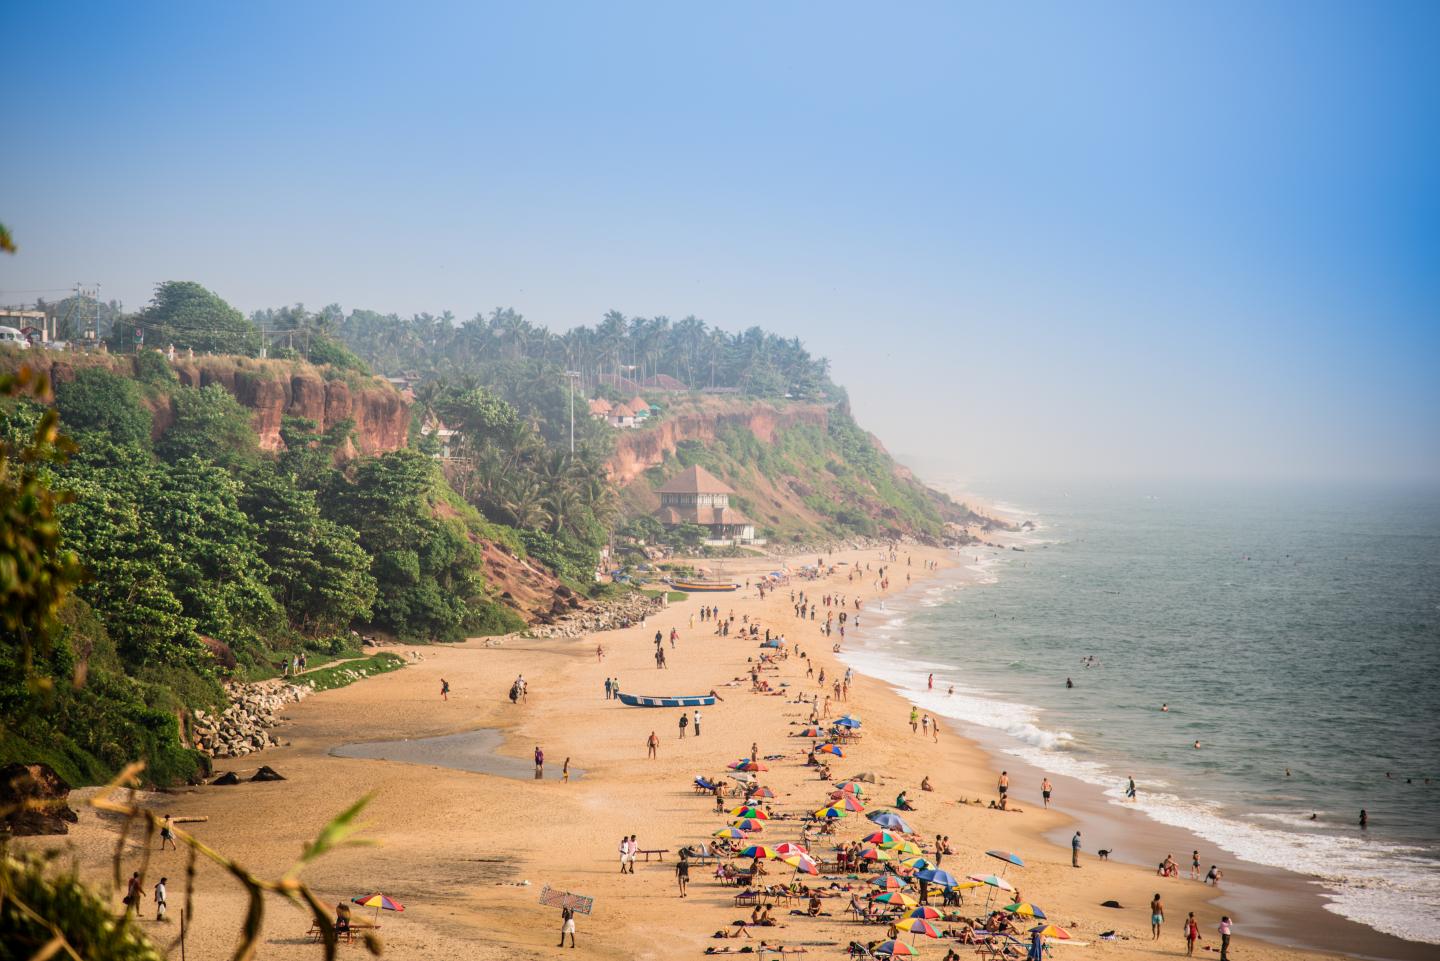 Kerala beaches and steep cliffs